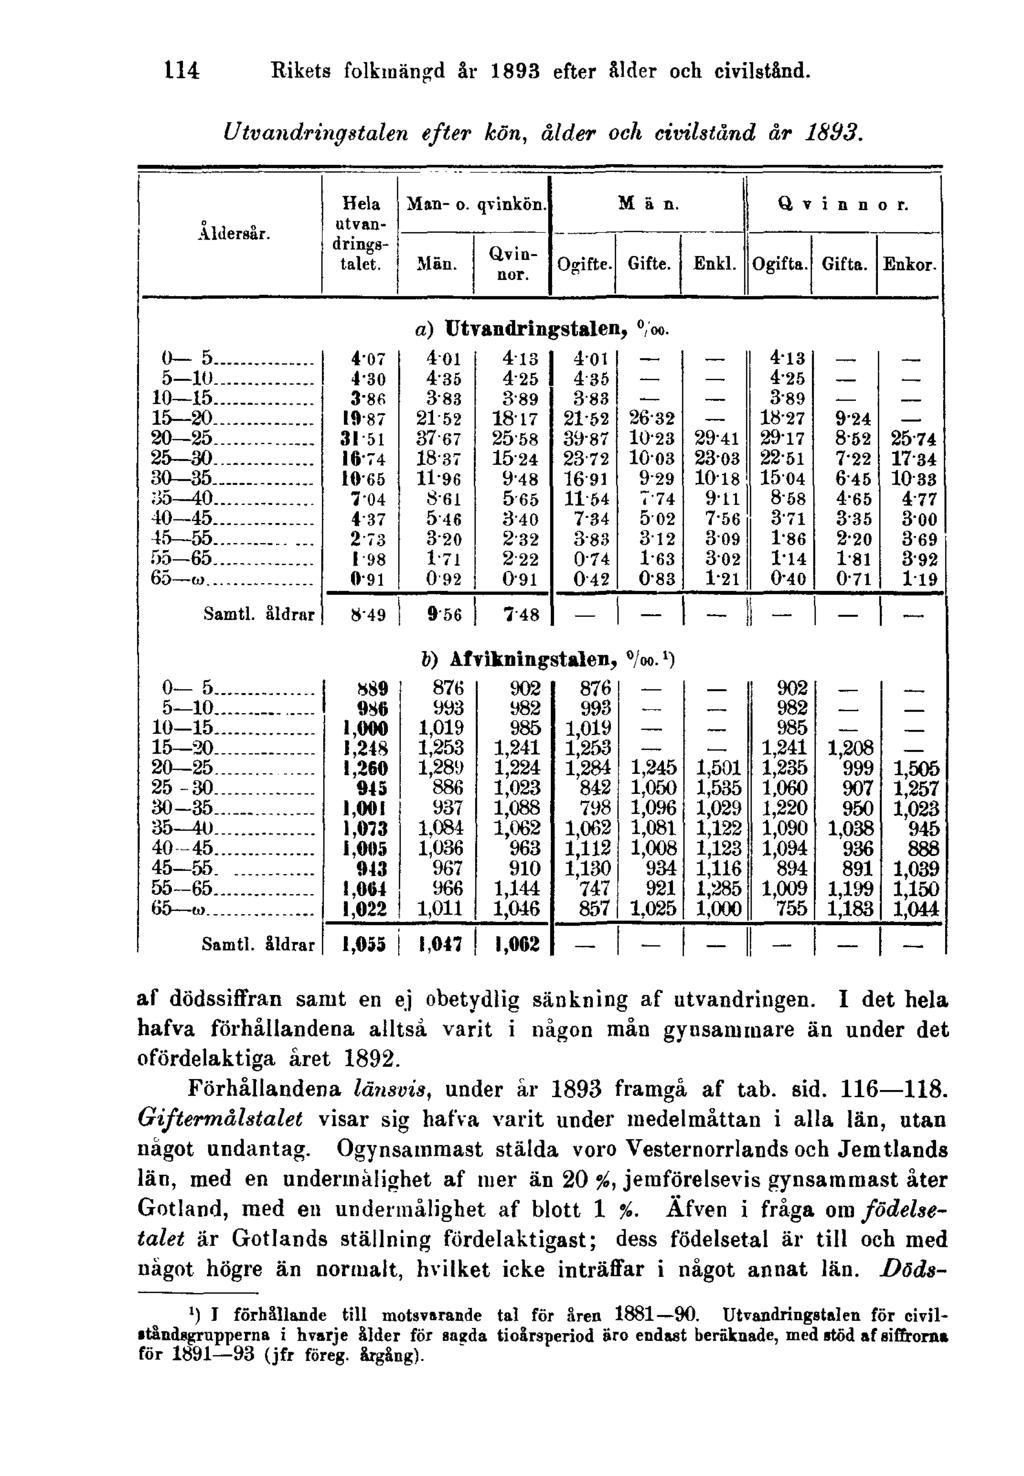 114 Rikets folkmängd år 1893 efter ålder och civilstånd. Utvandringstalen efter kön, ålder och civilstånd år 1893. af dödssiffran samt en ej obetydlig sänkning af utvandringen.